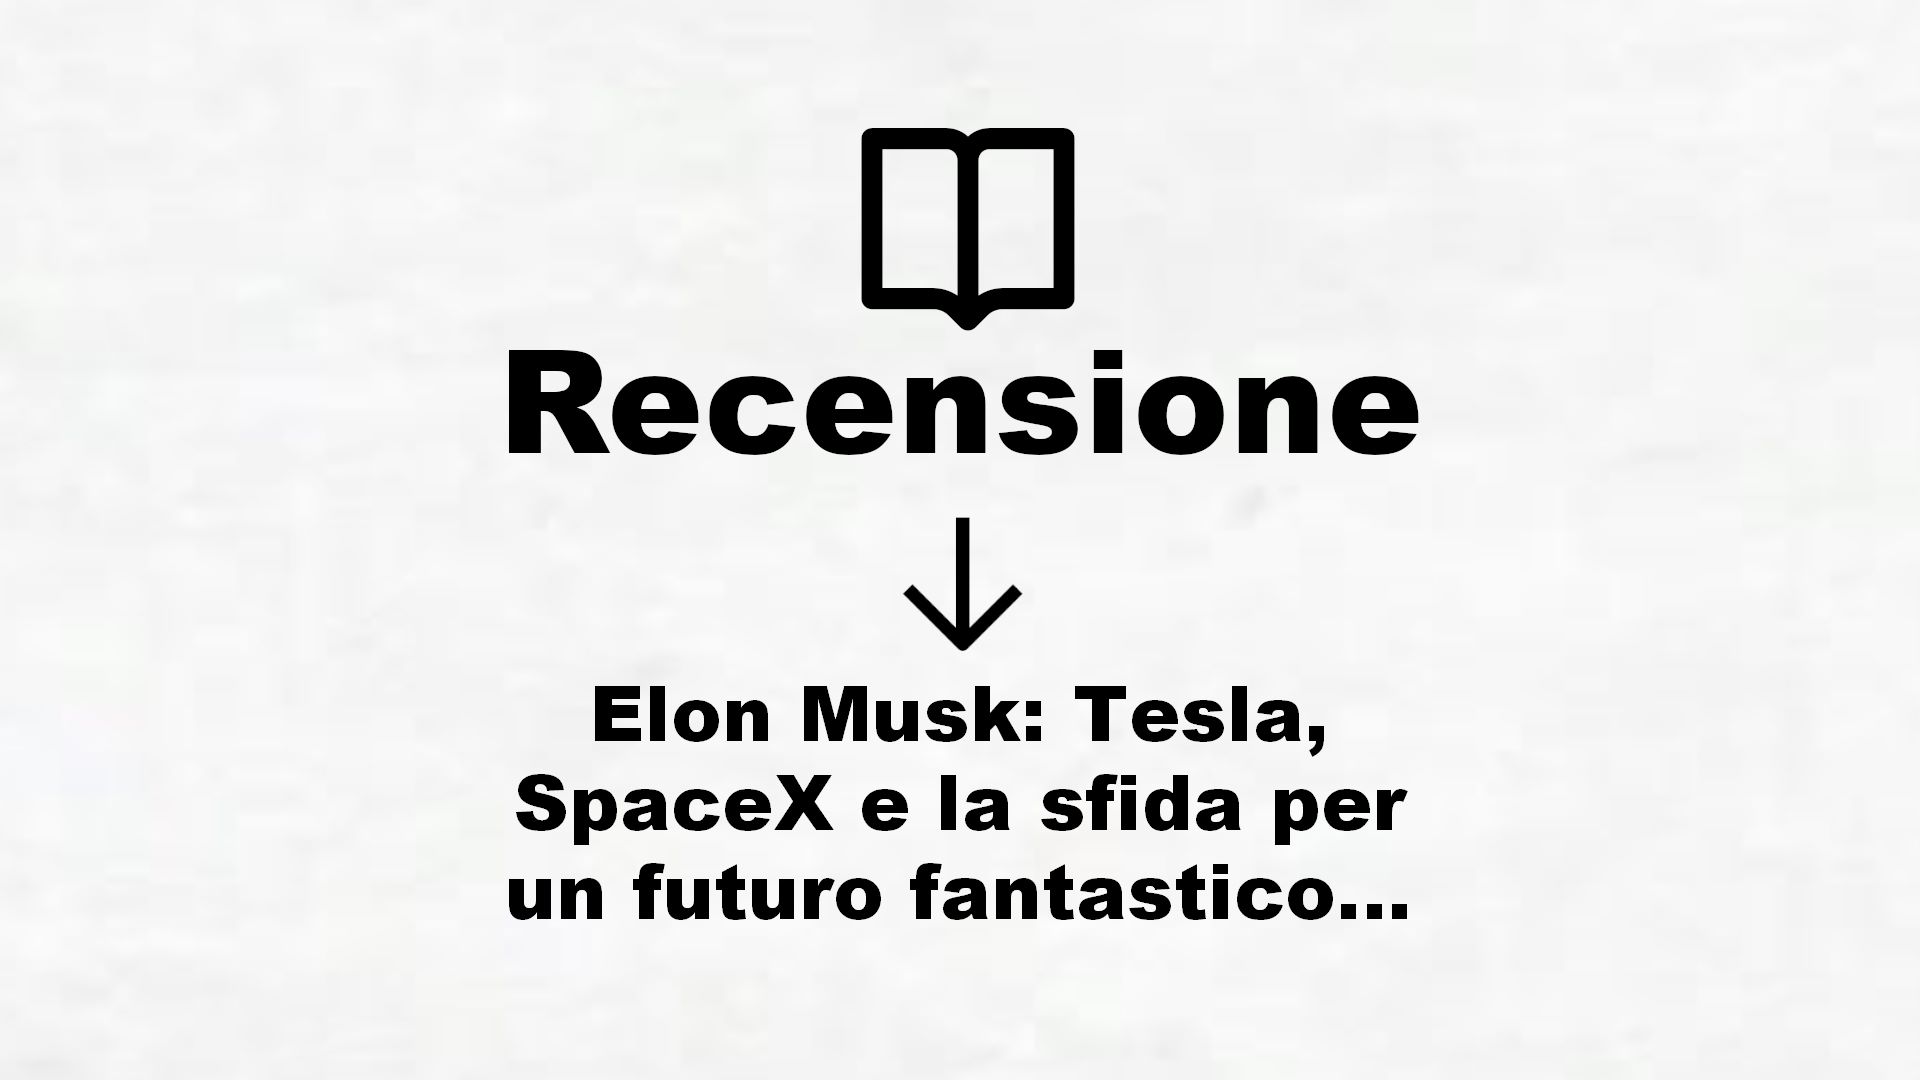 Elon Musk: Tesla, SpaceX e la sfida per un futuro fantastico – Recensione Libro